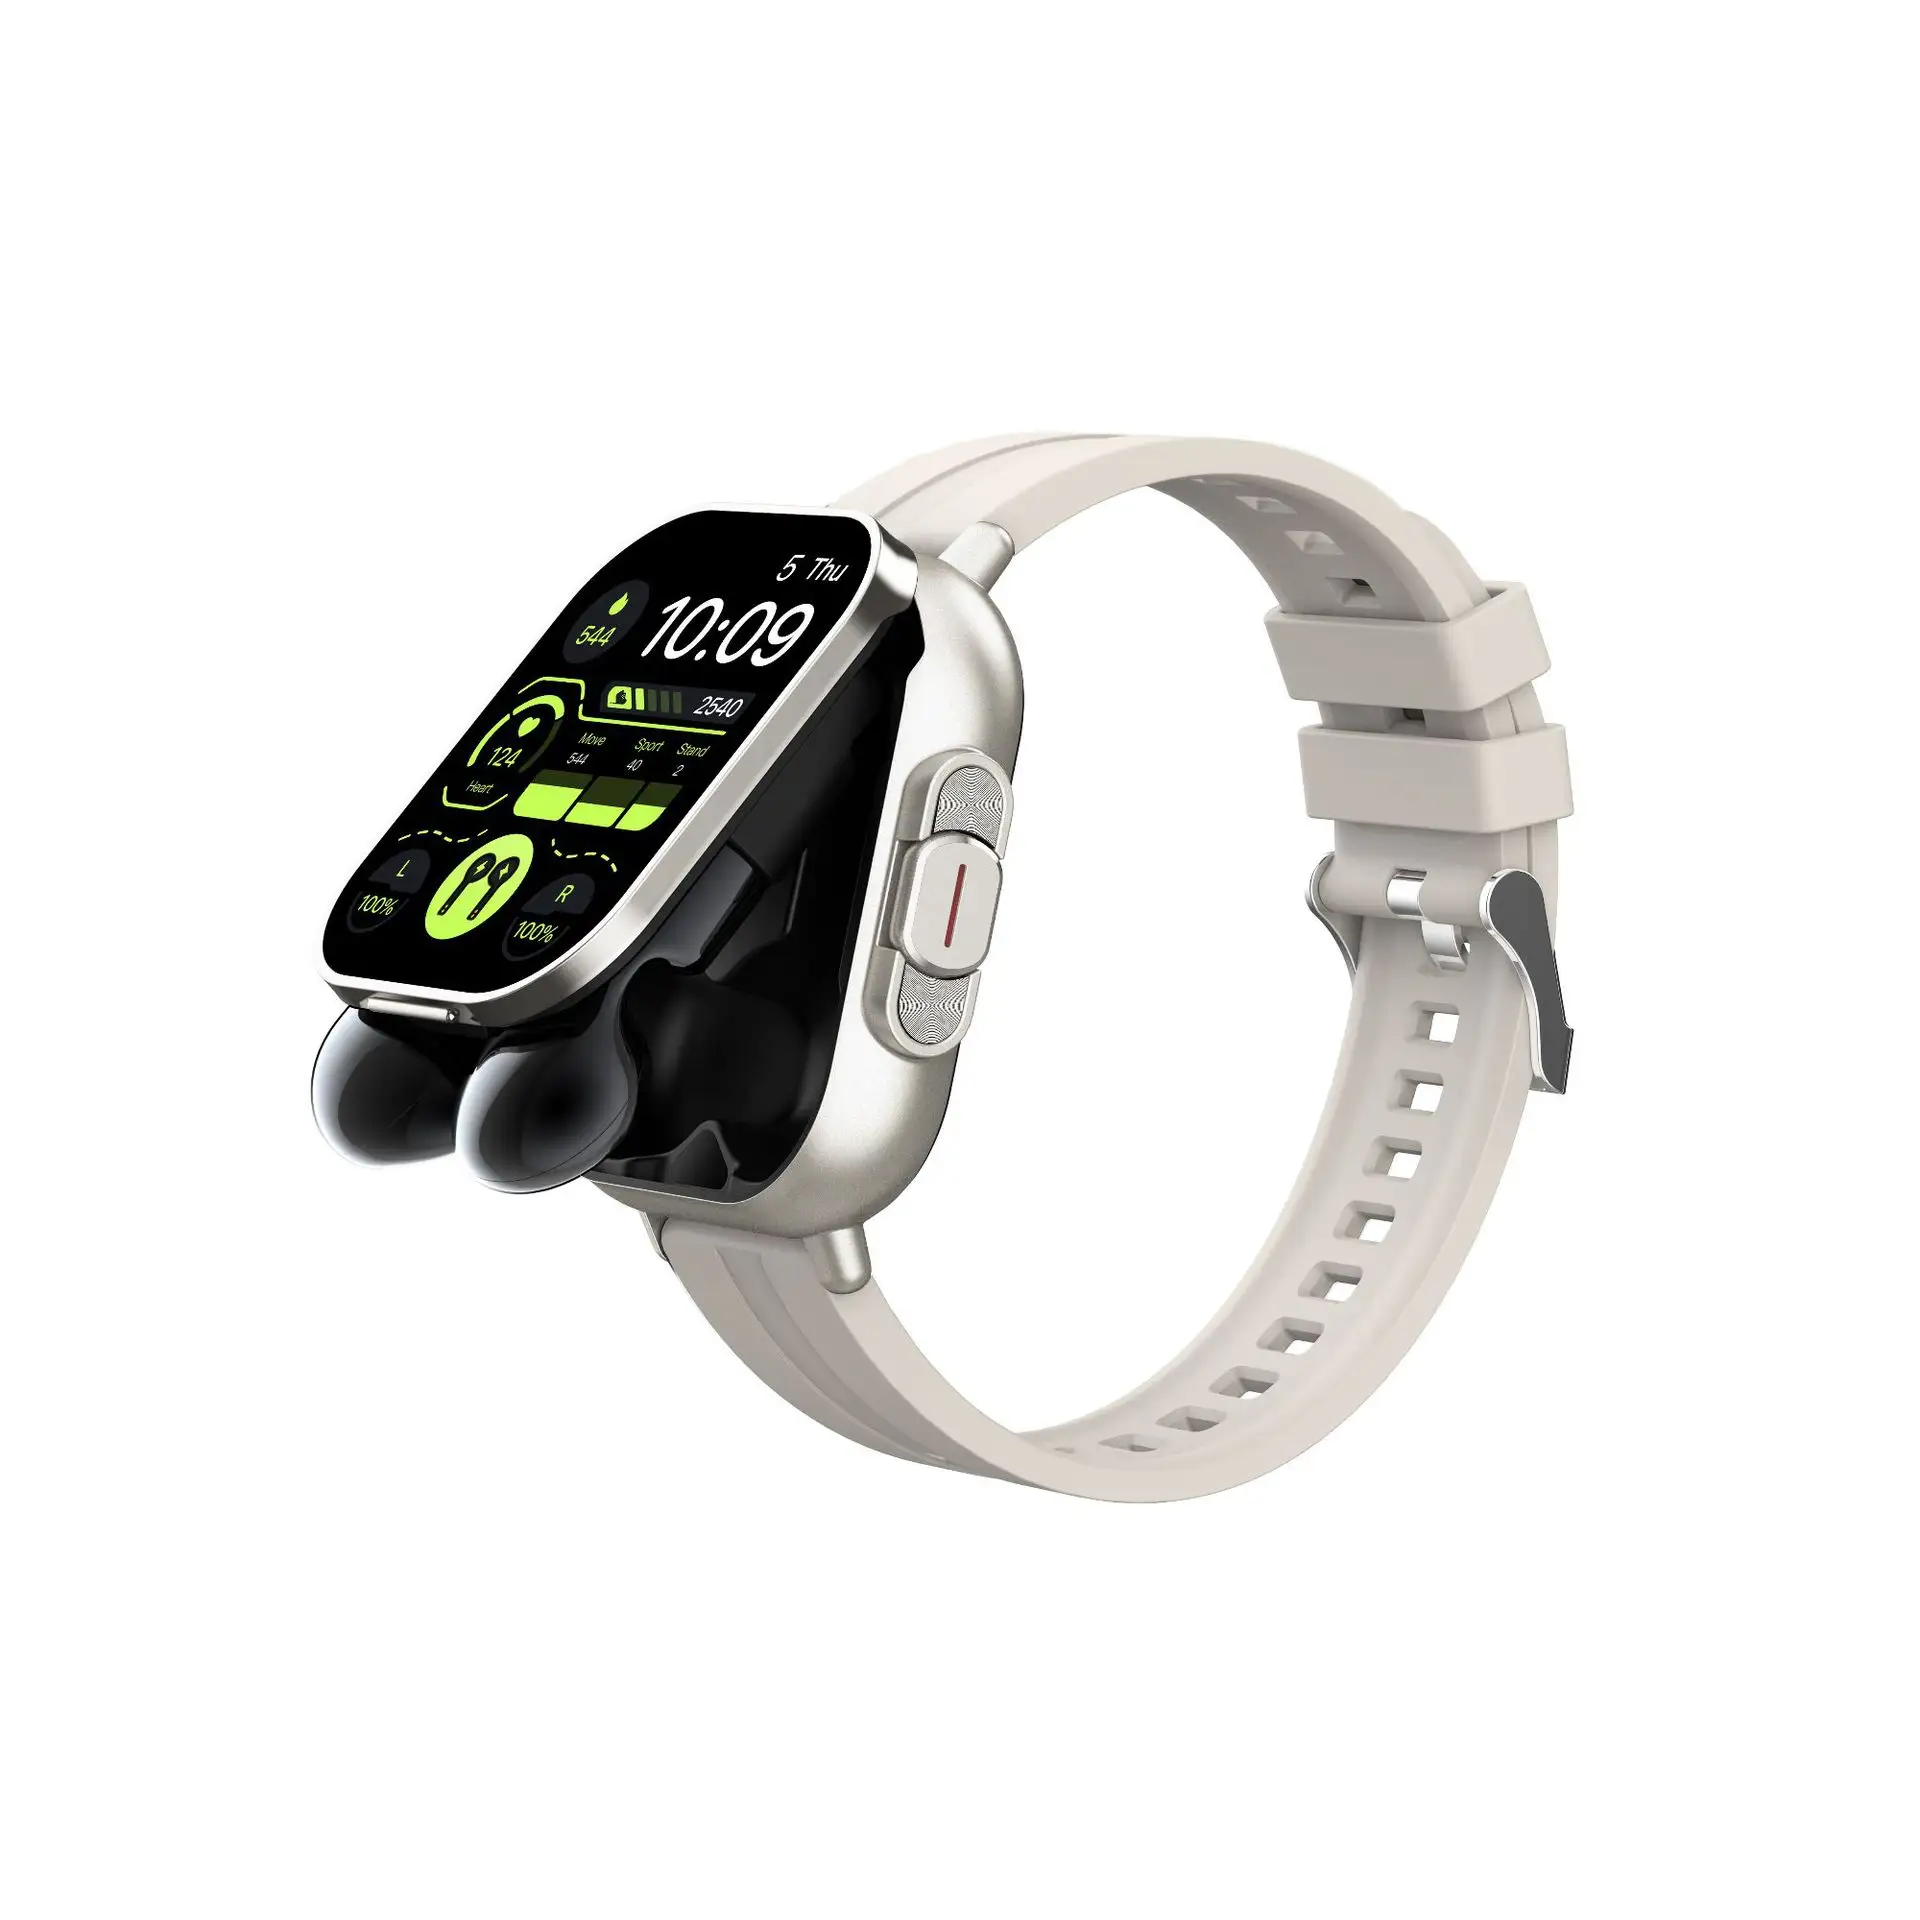 Novo smartwatch fones de ouvido com controle de toque de tela cheia de 2 polegadas chamada Bluetooth Lingdong Ilha função 2 em 1 relógios relógio inteligente